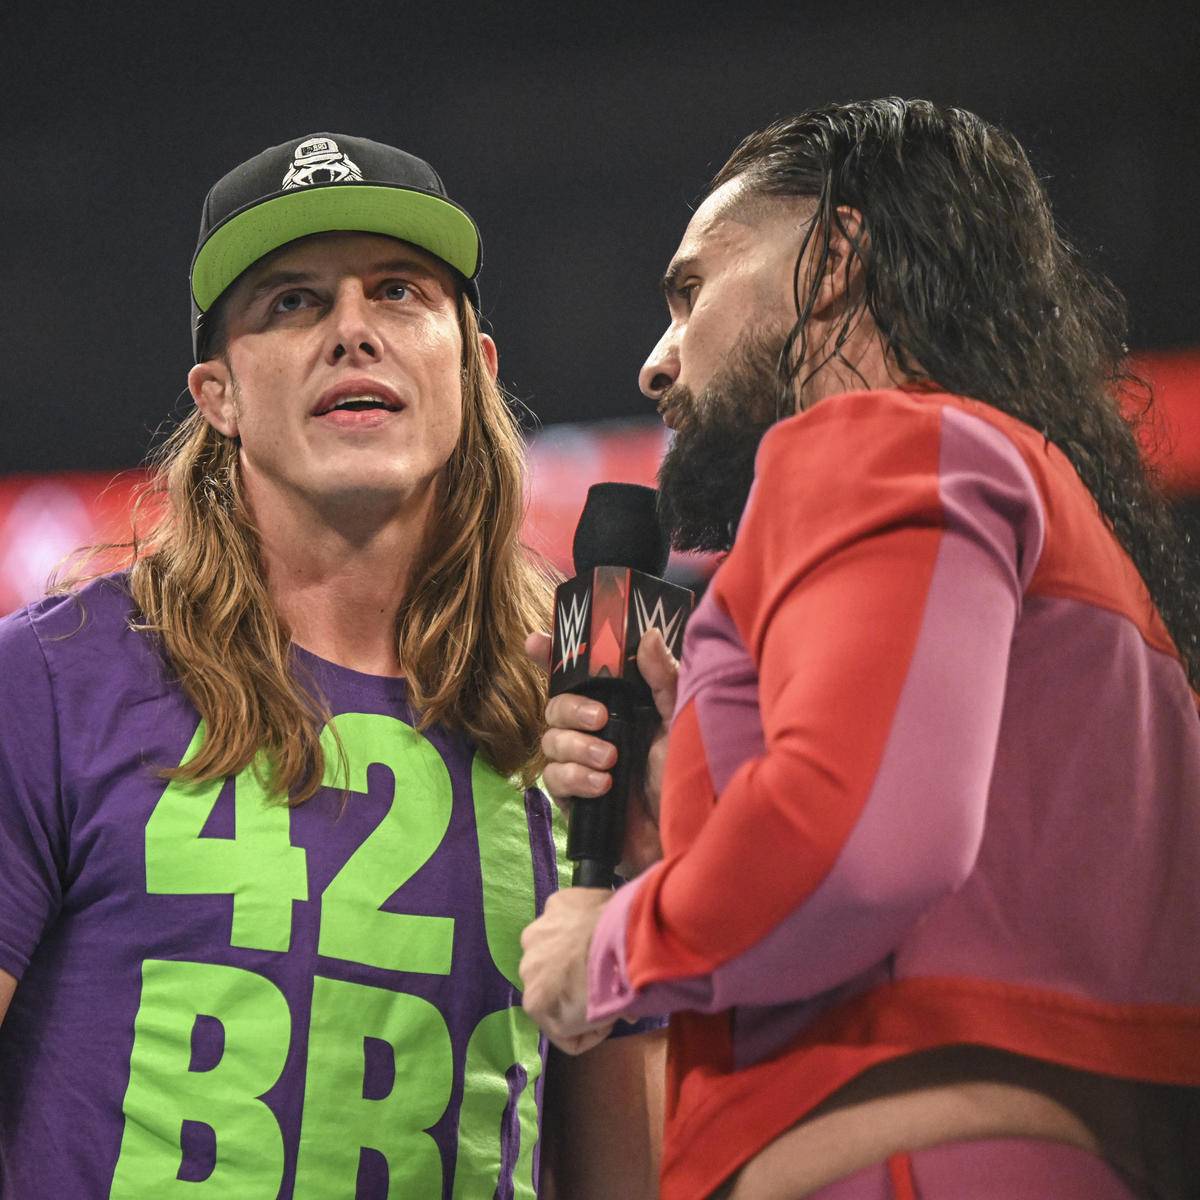 WWE-Star Seth Rollins reizt Rivale Matt Riddle bei Monday Night RAW mit bösen Anspielungen auf dessen zerbrochene Ehe. Wegen Riddles Ex knallte es auch schon real zwischen den beiden.